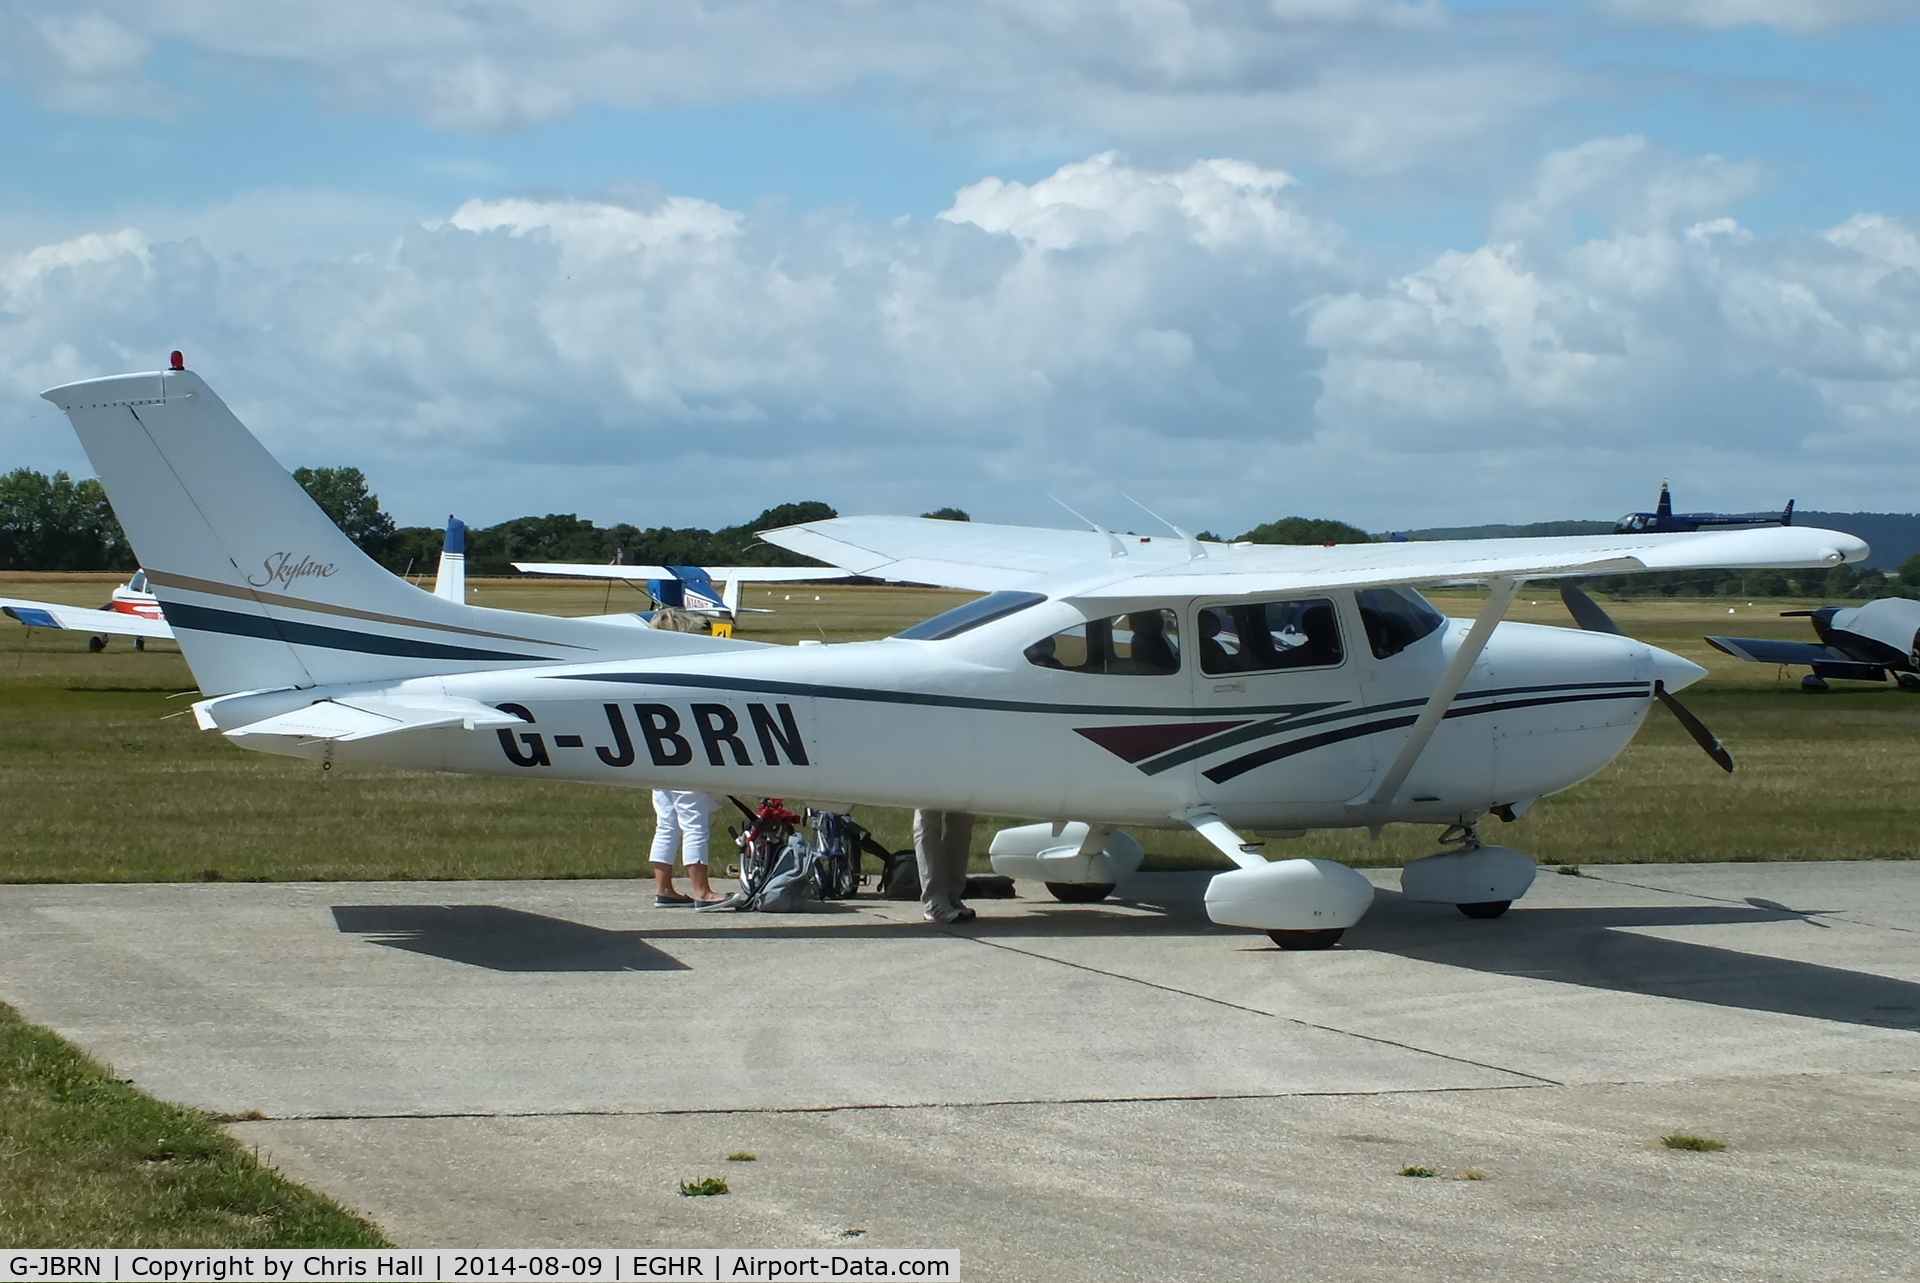 G-JBRN, 1997 Cessna 182S Skylane C/N 18280029, at Goodwood airfield